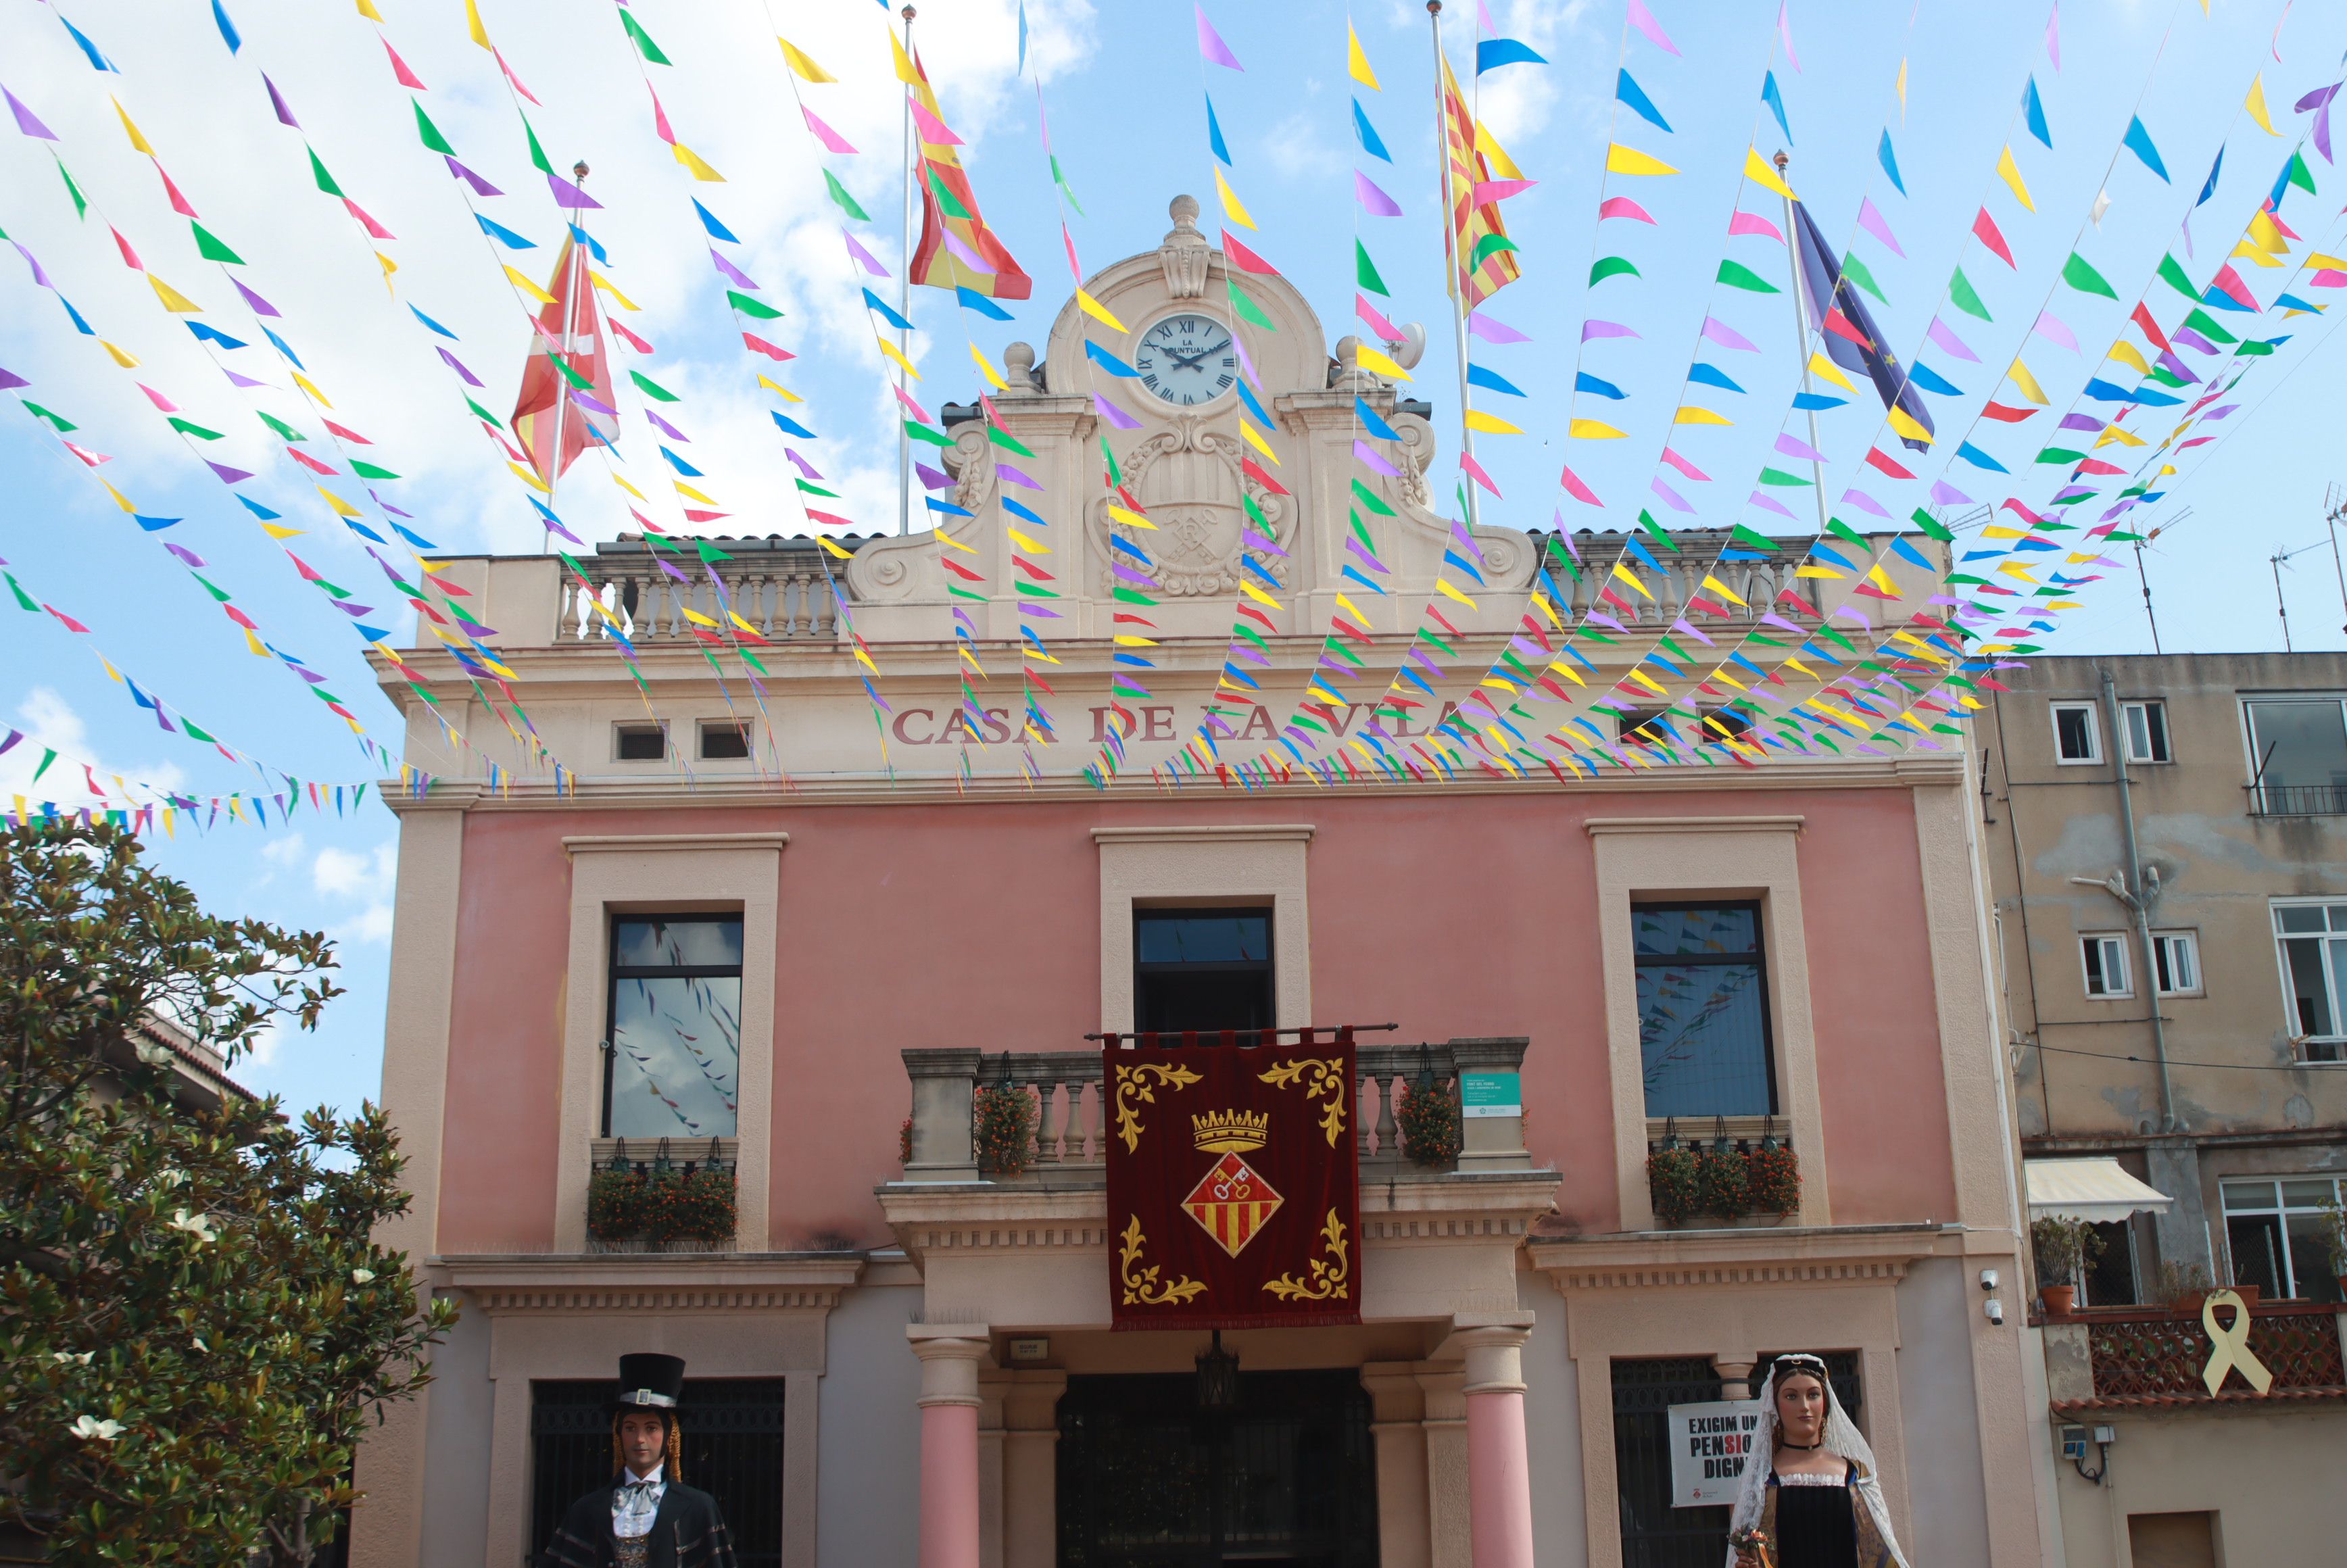 Despertada i plantada de gegants per Festa Major. FOTO: Josep Llamas